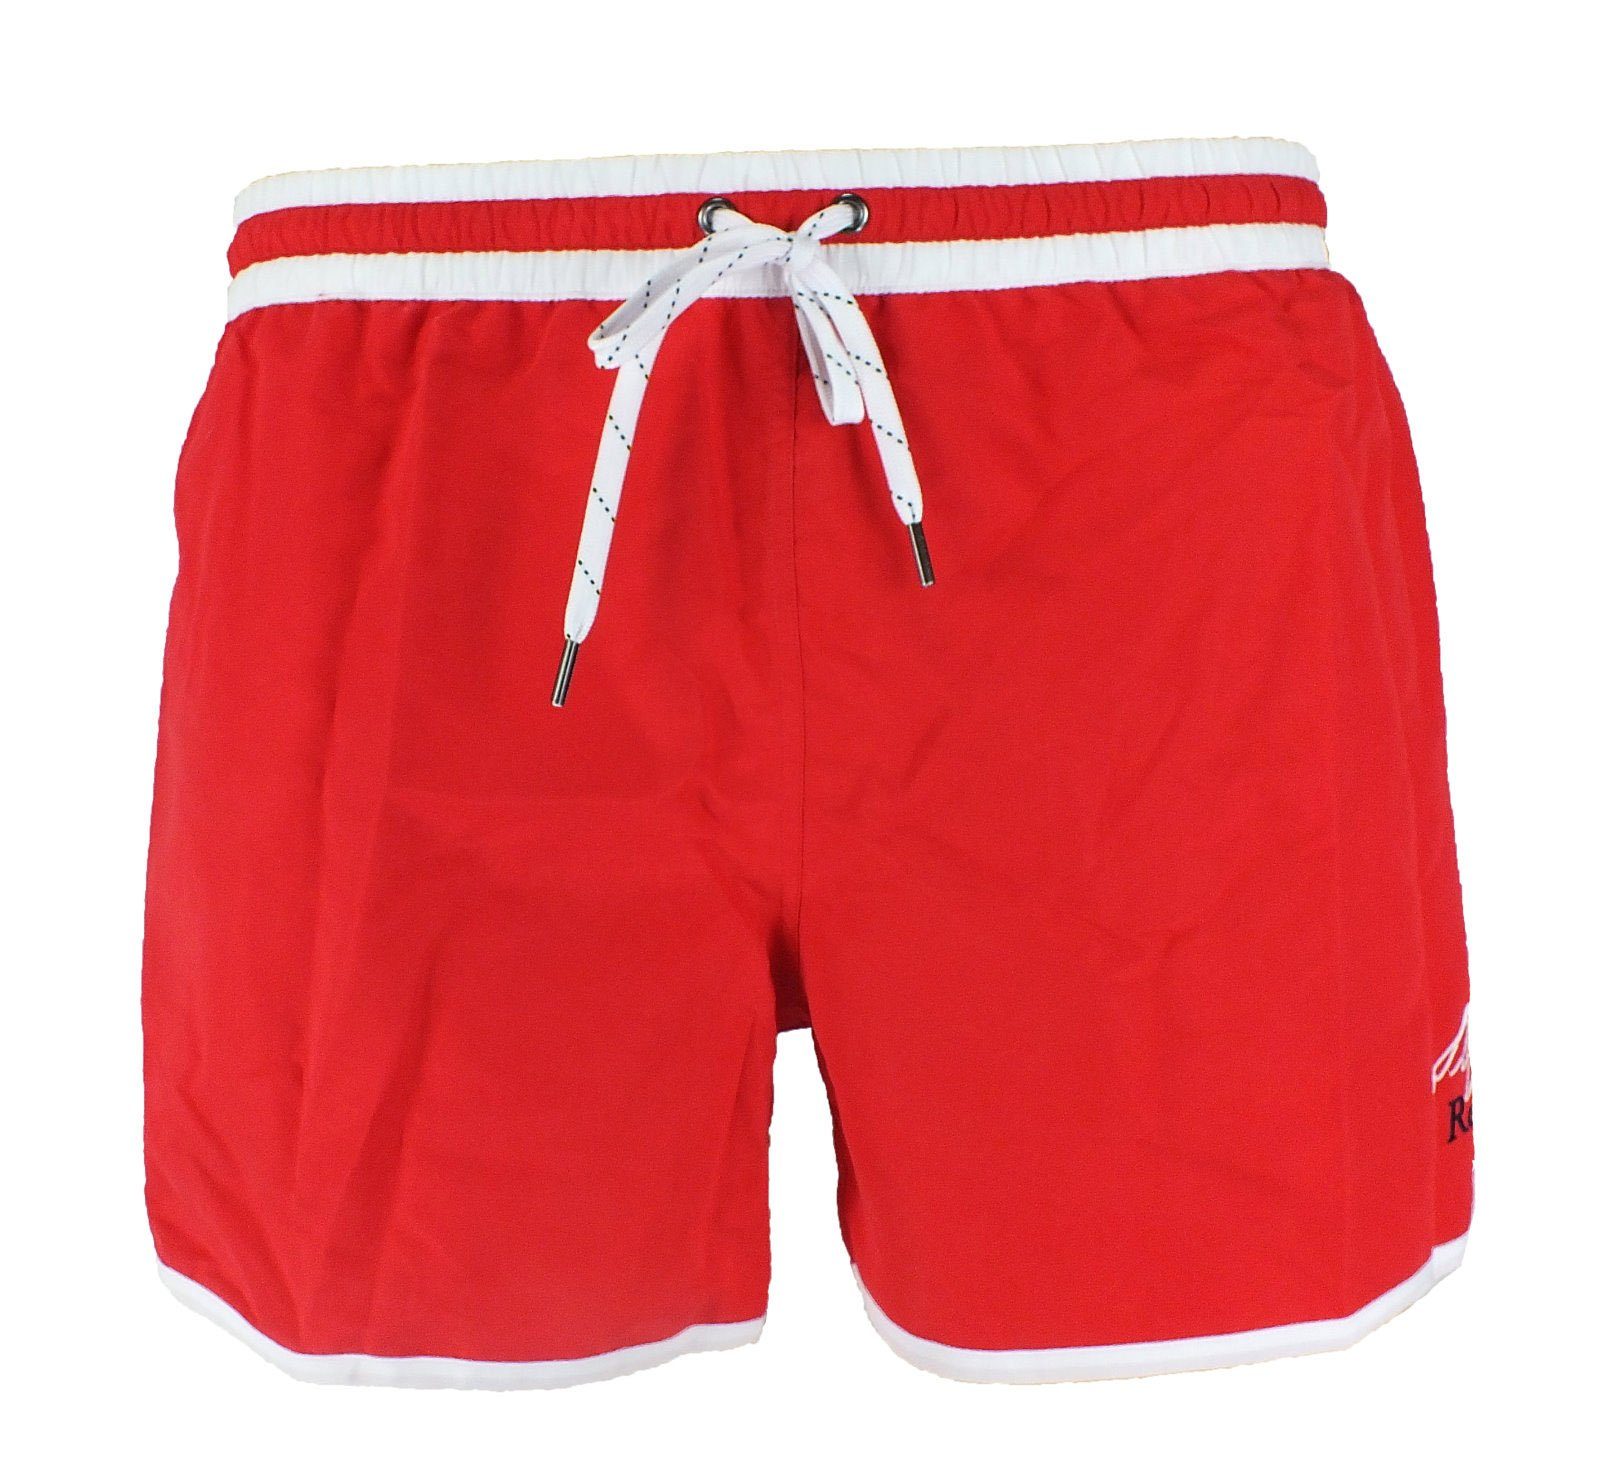 Skiny Badeshorts Short Mix Shorts Retro-Stil 1512 red